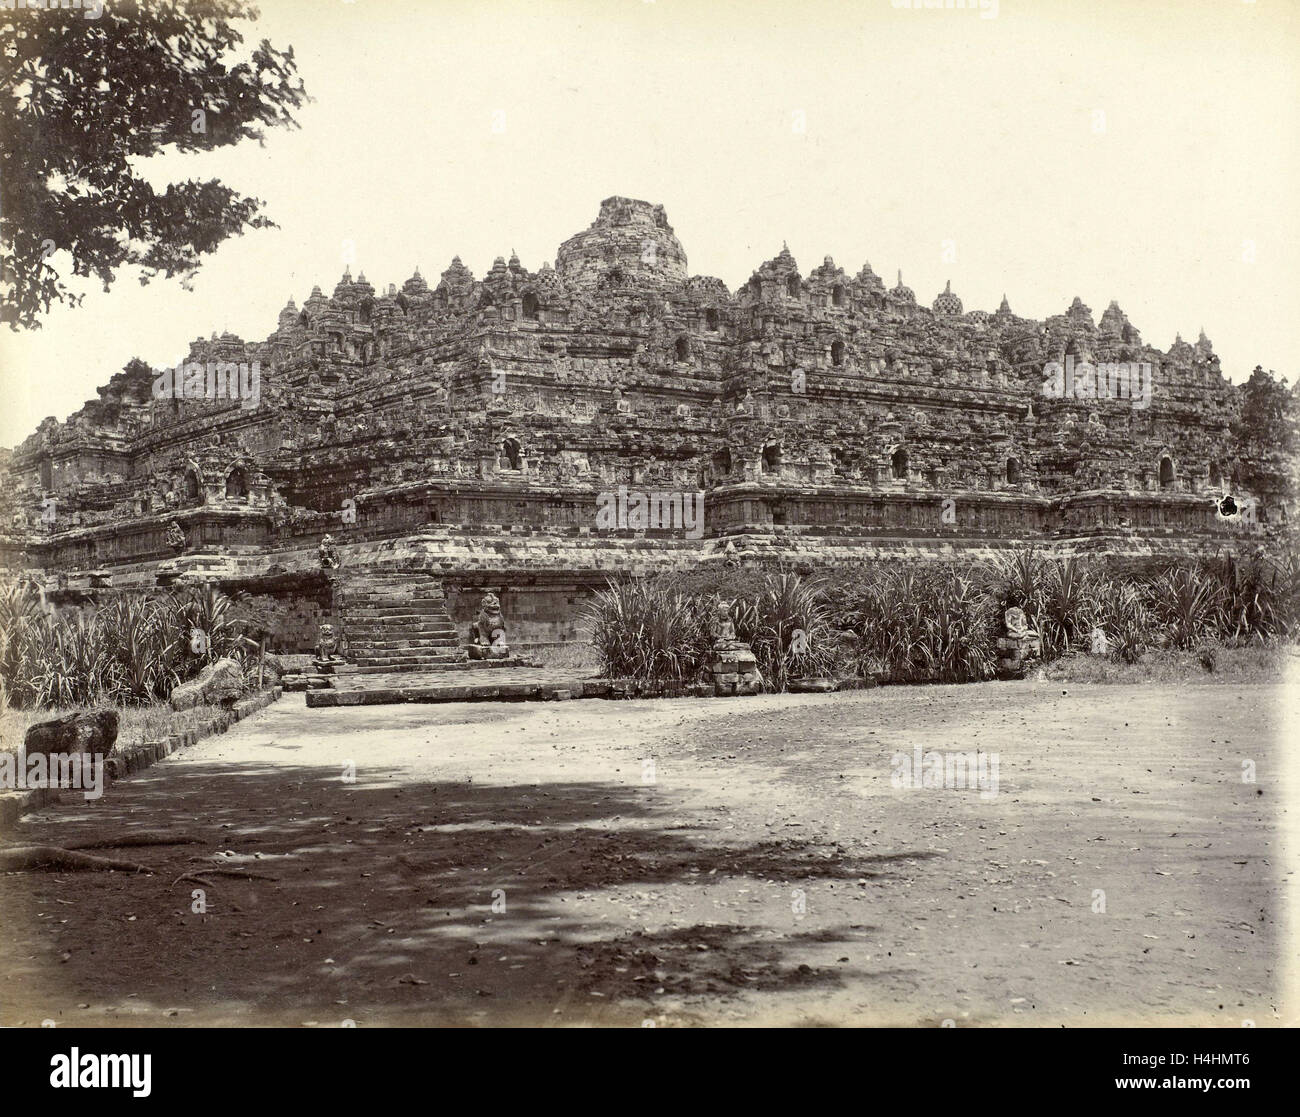 Il Borobudur in Java, Indonesia, anonimo, c. 1895 - c. 1905 Foto Stock